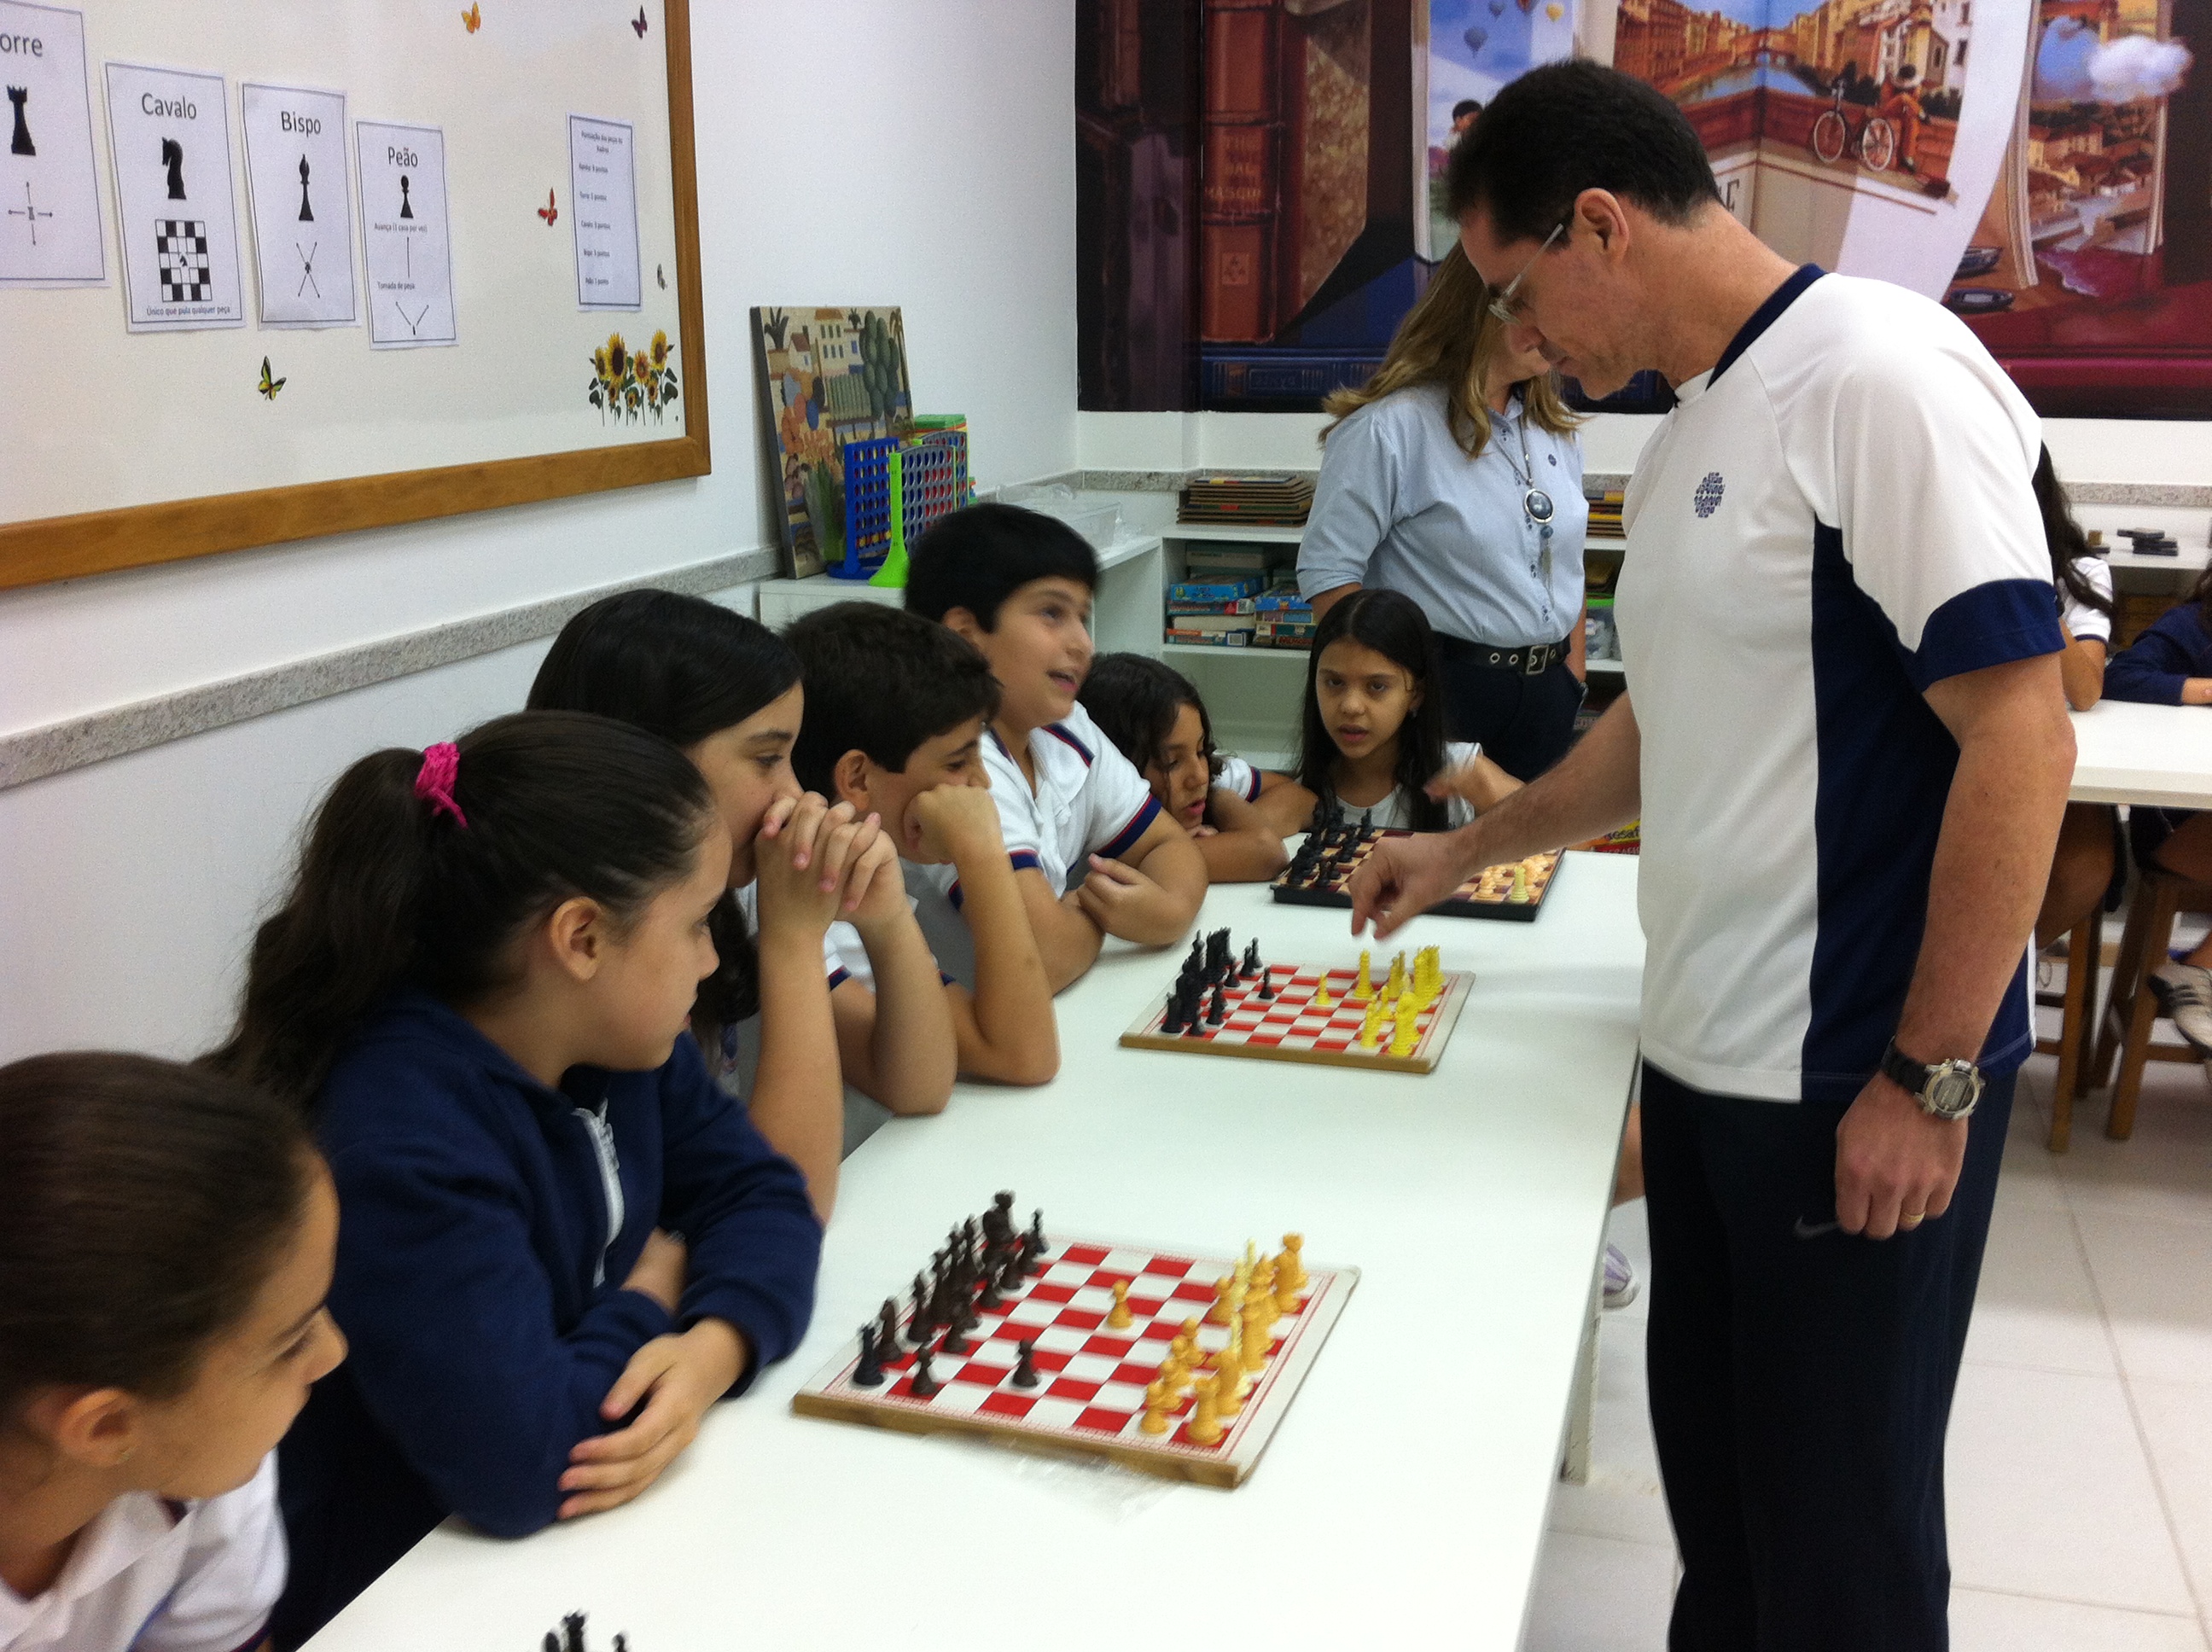 Xadrez como instrumento de ensino - Centro Educacional Leonardo Da Vinci -  Centro Educacional Leonardo Da Vinci